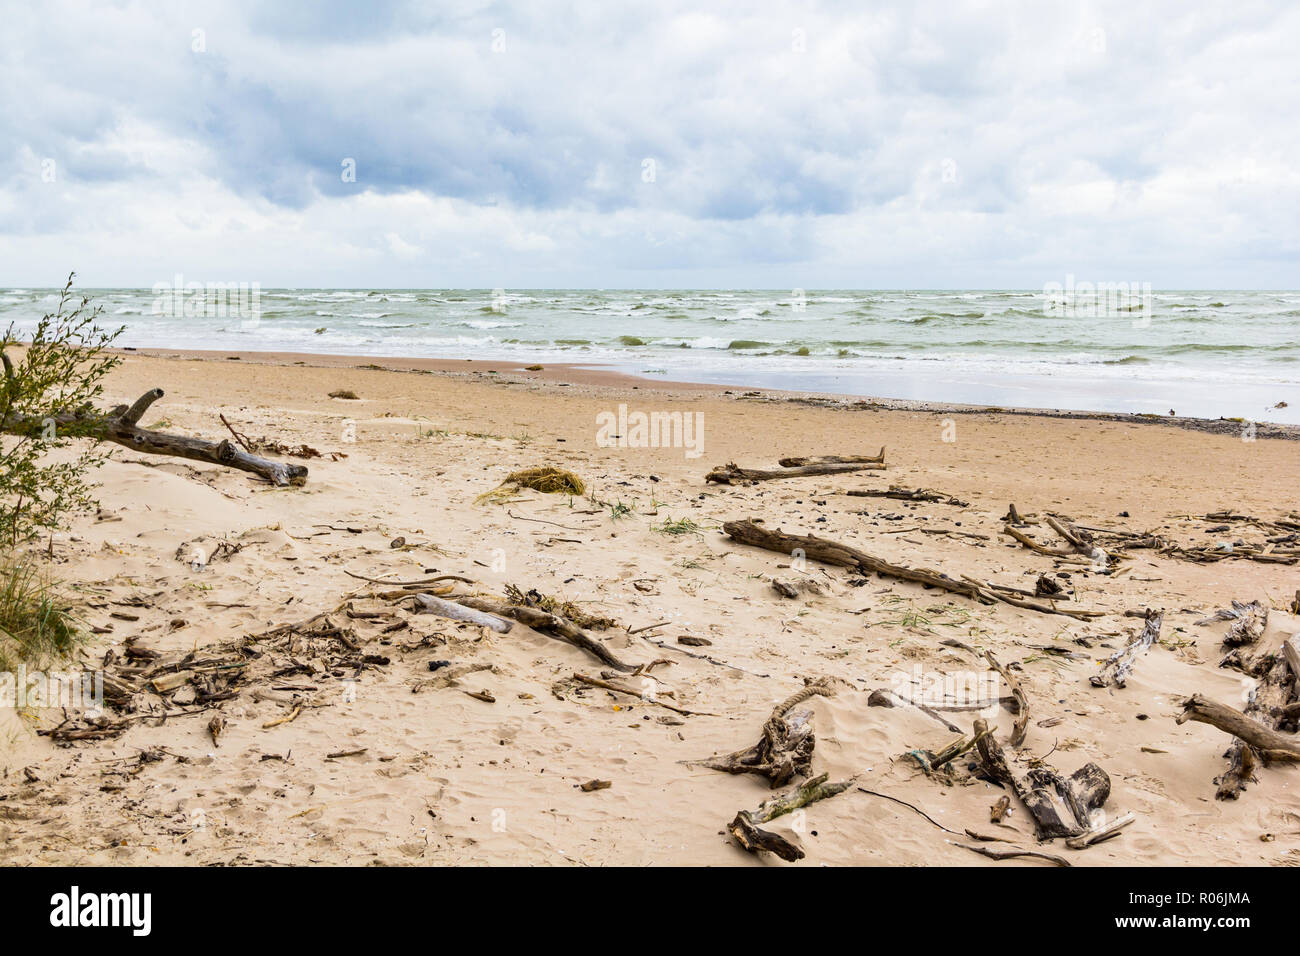 Mar baltico con driftwood sulla spiaggia Foto Stock